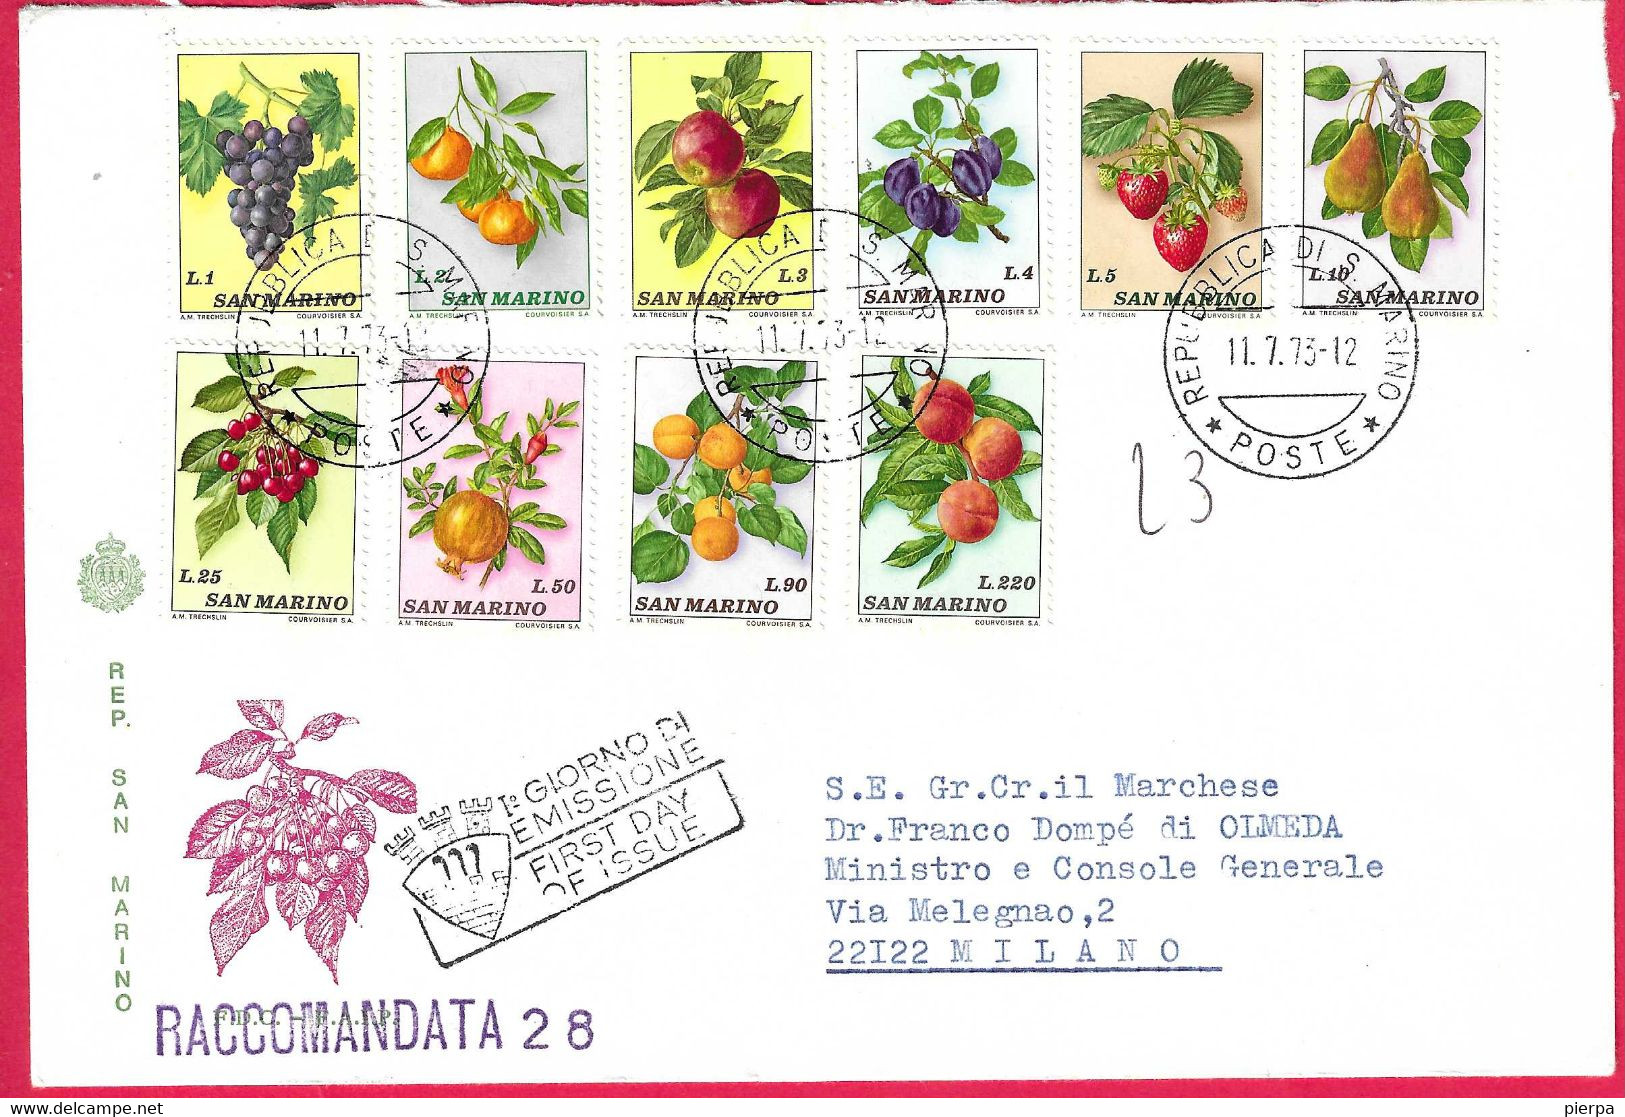 SAN MARINO - SERIE FRUTTA 1973 - SU BUSTA GRANDE CON ANNULLO F.D.C. - RACCOMANDATA PER MILANO - Express Letter Stamps